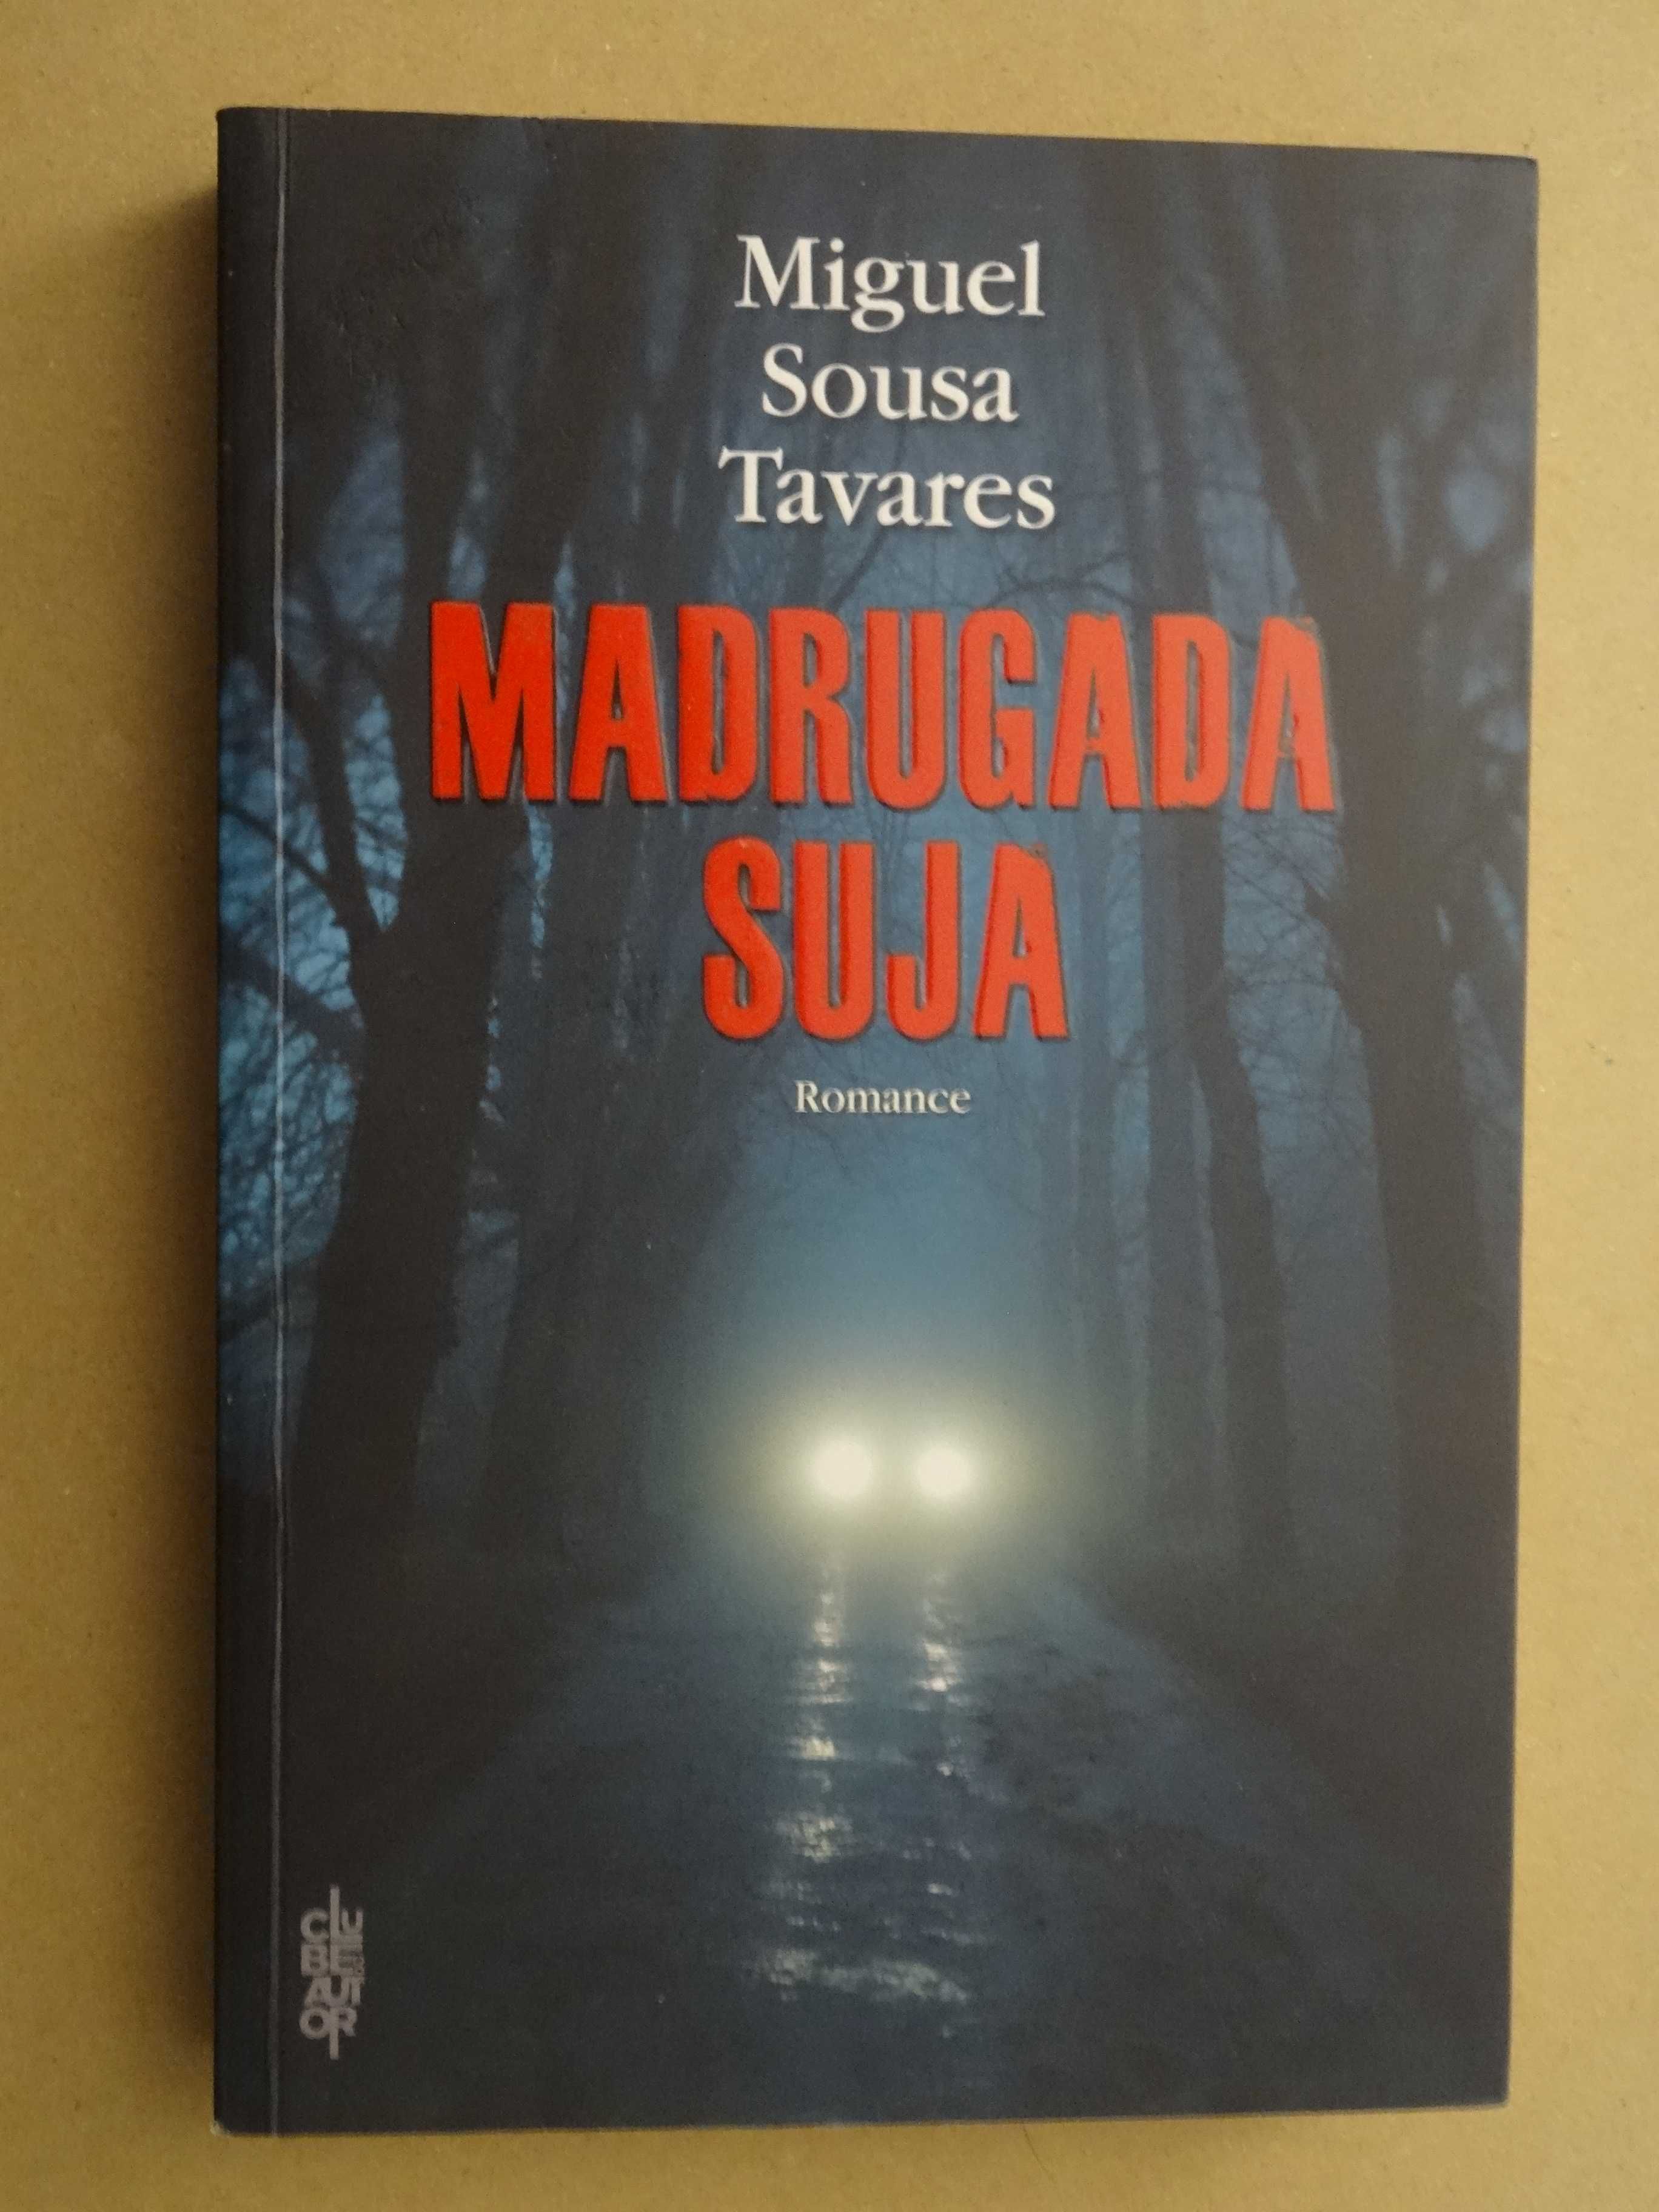 Madrugada Suja de Miguel Sousa Tavares - 1ª Edição